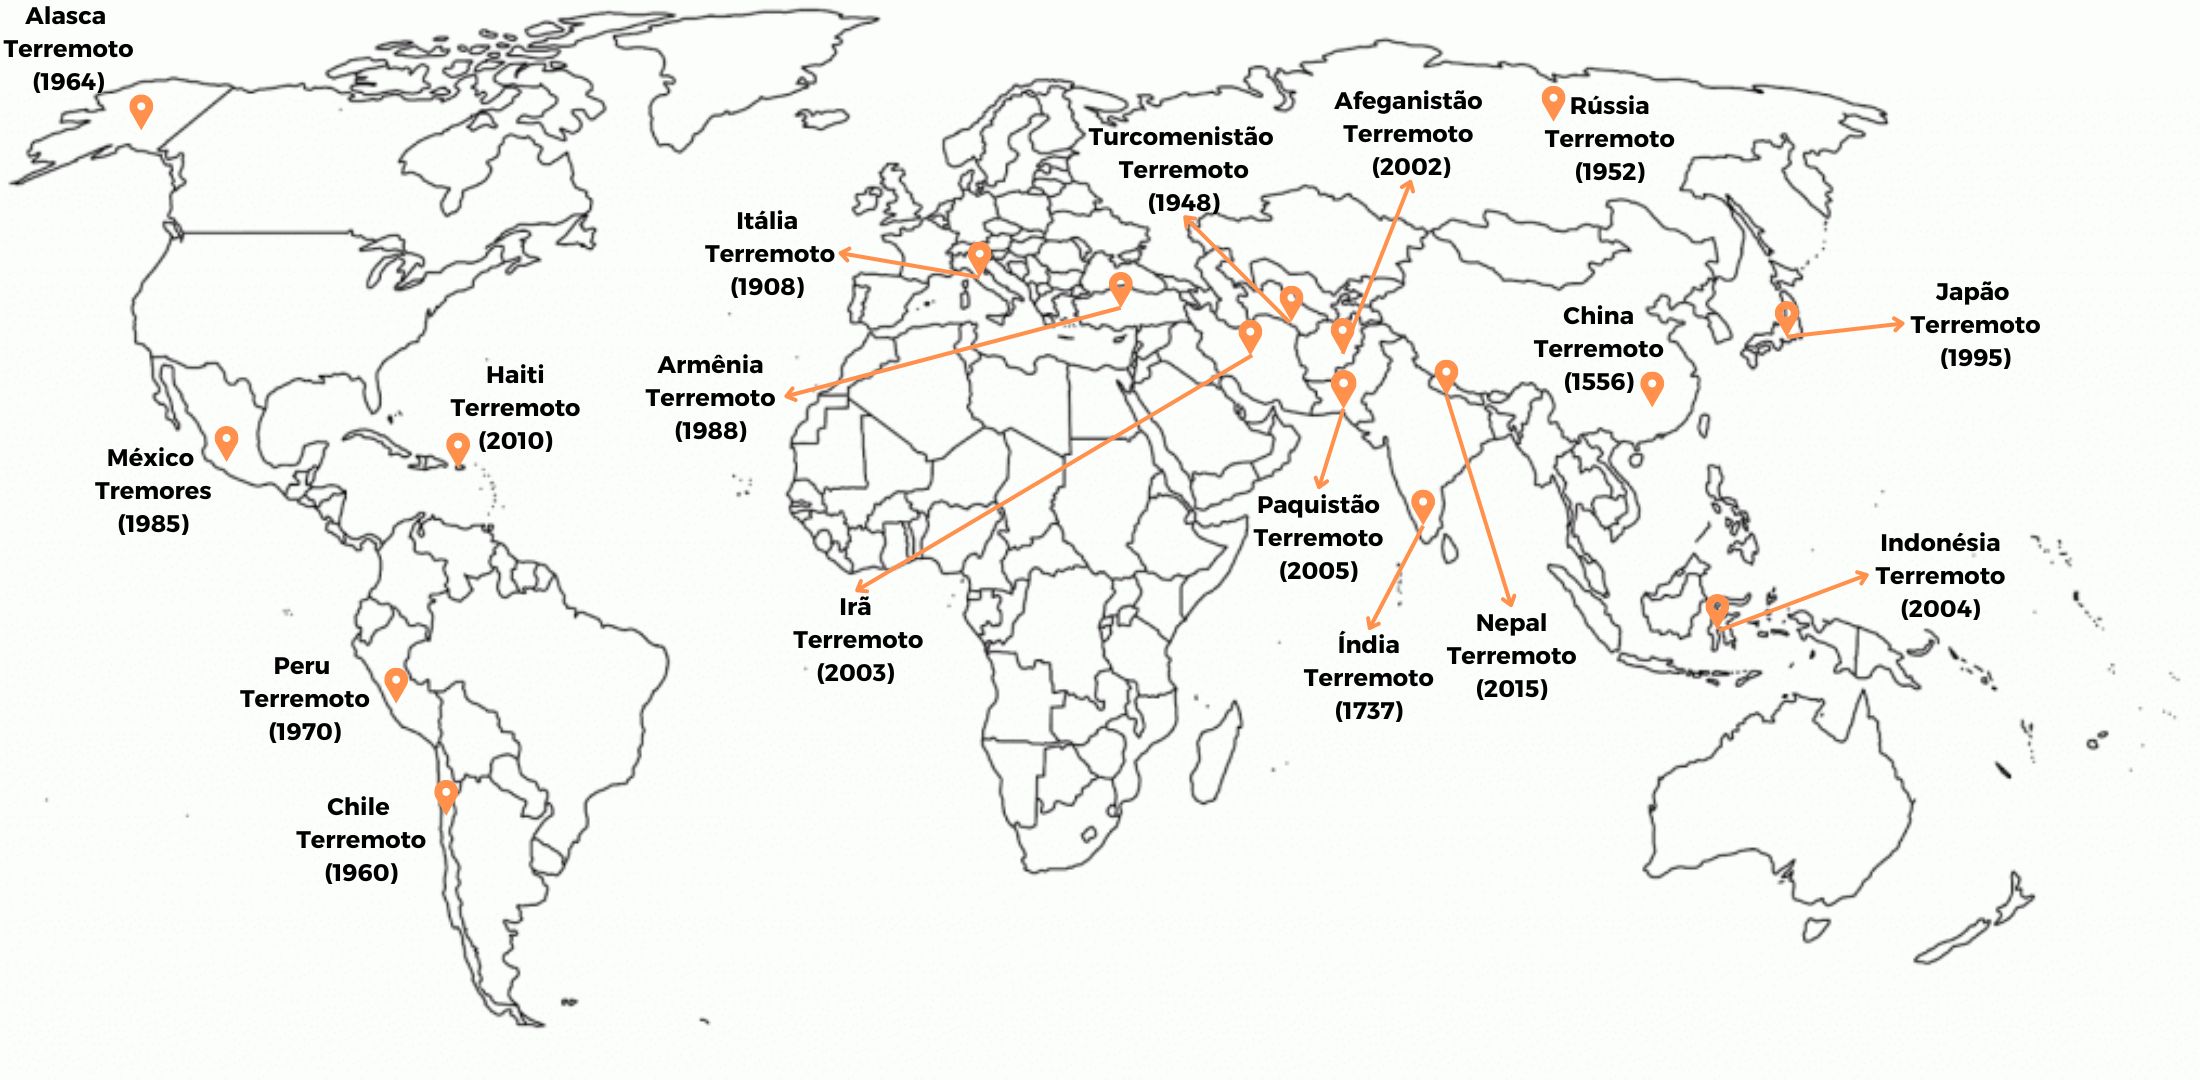 Registro de Terremotos e Tremores pelo Mundo (1556 a 2015)